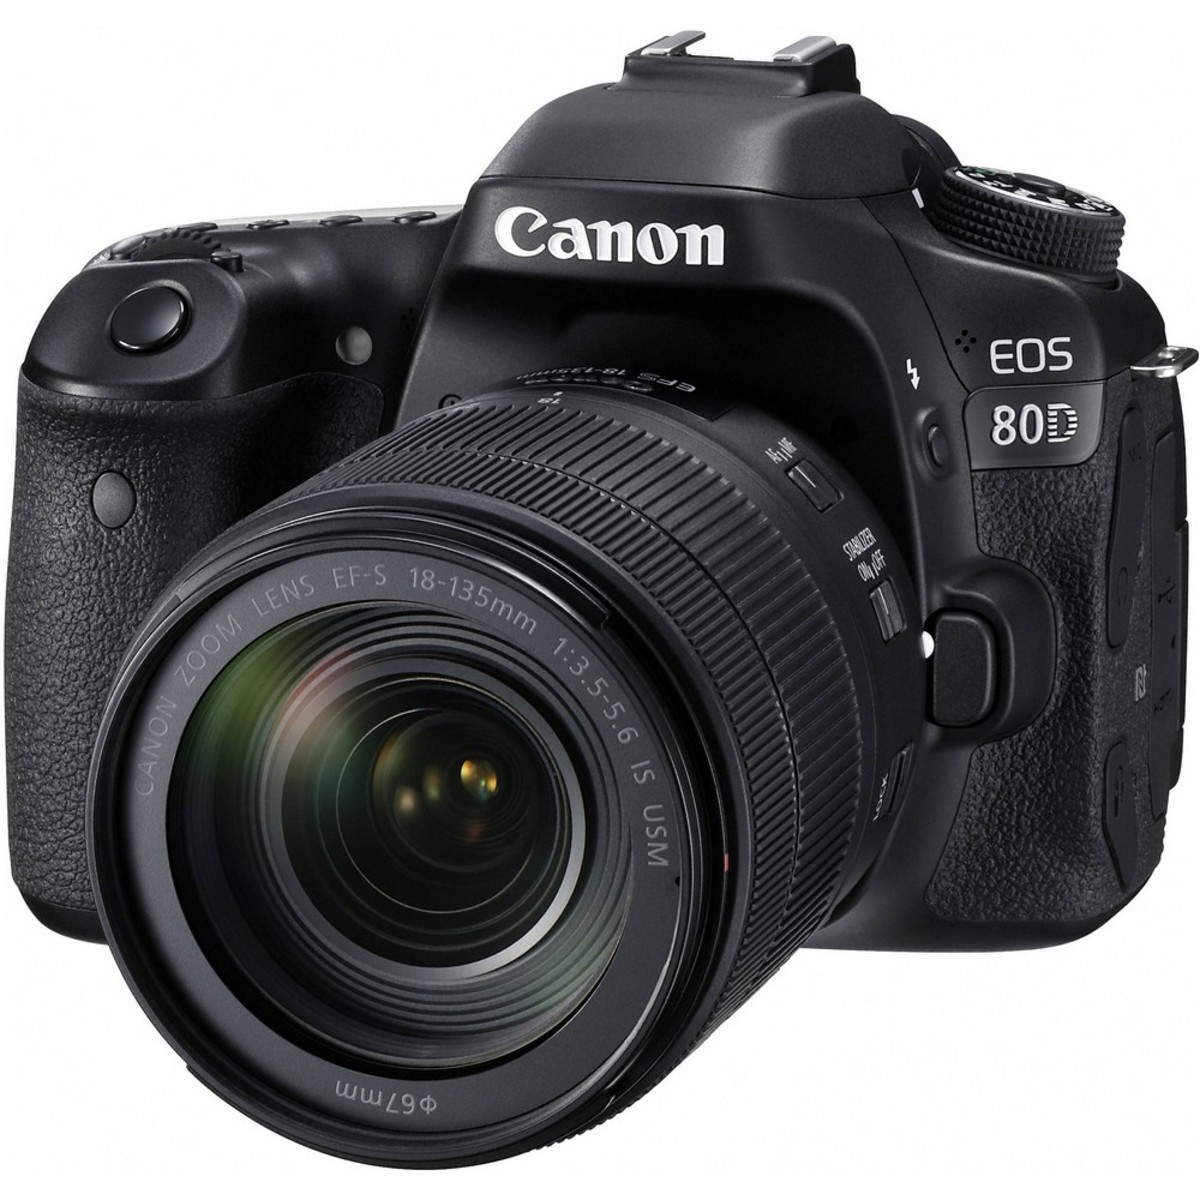 Camera saudi in canon dslr arabia price D7500 DSLR